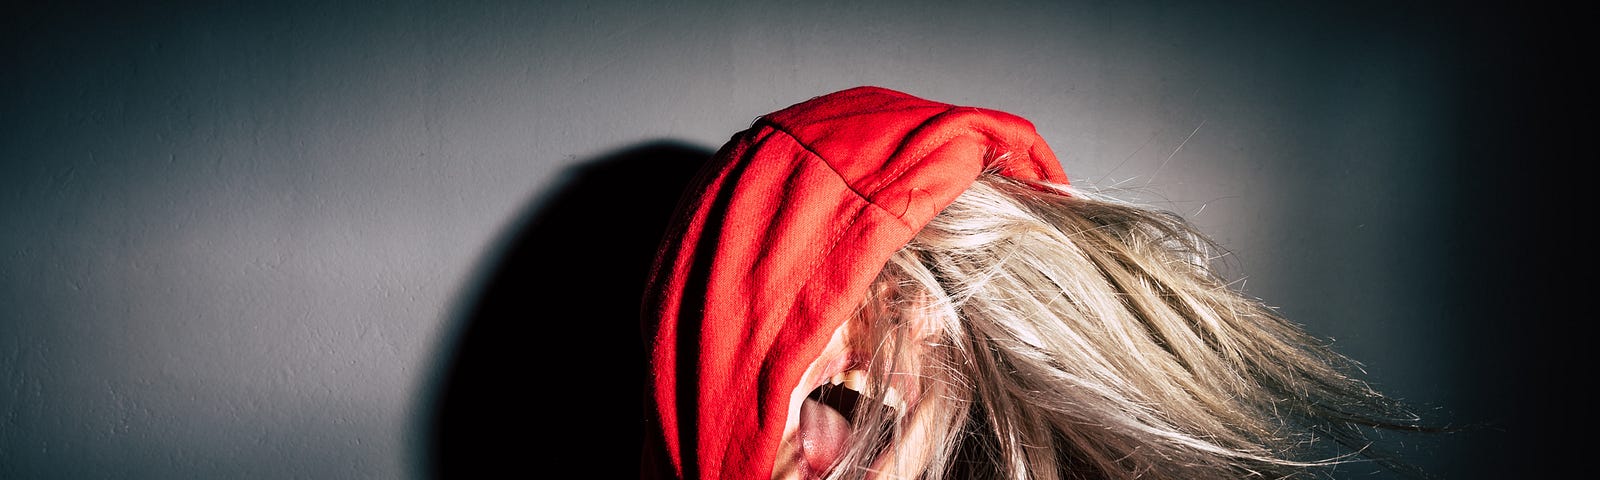 A blonde woman in a red hoodie screams.